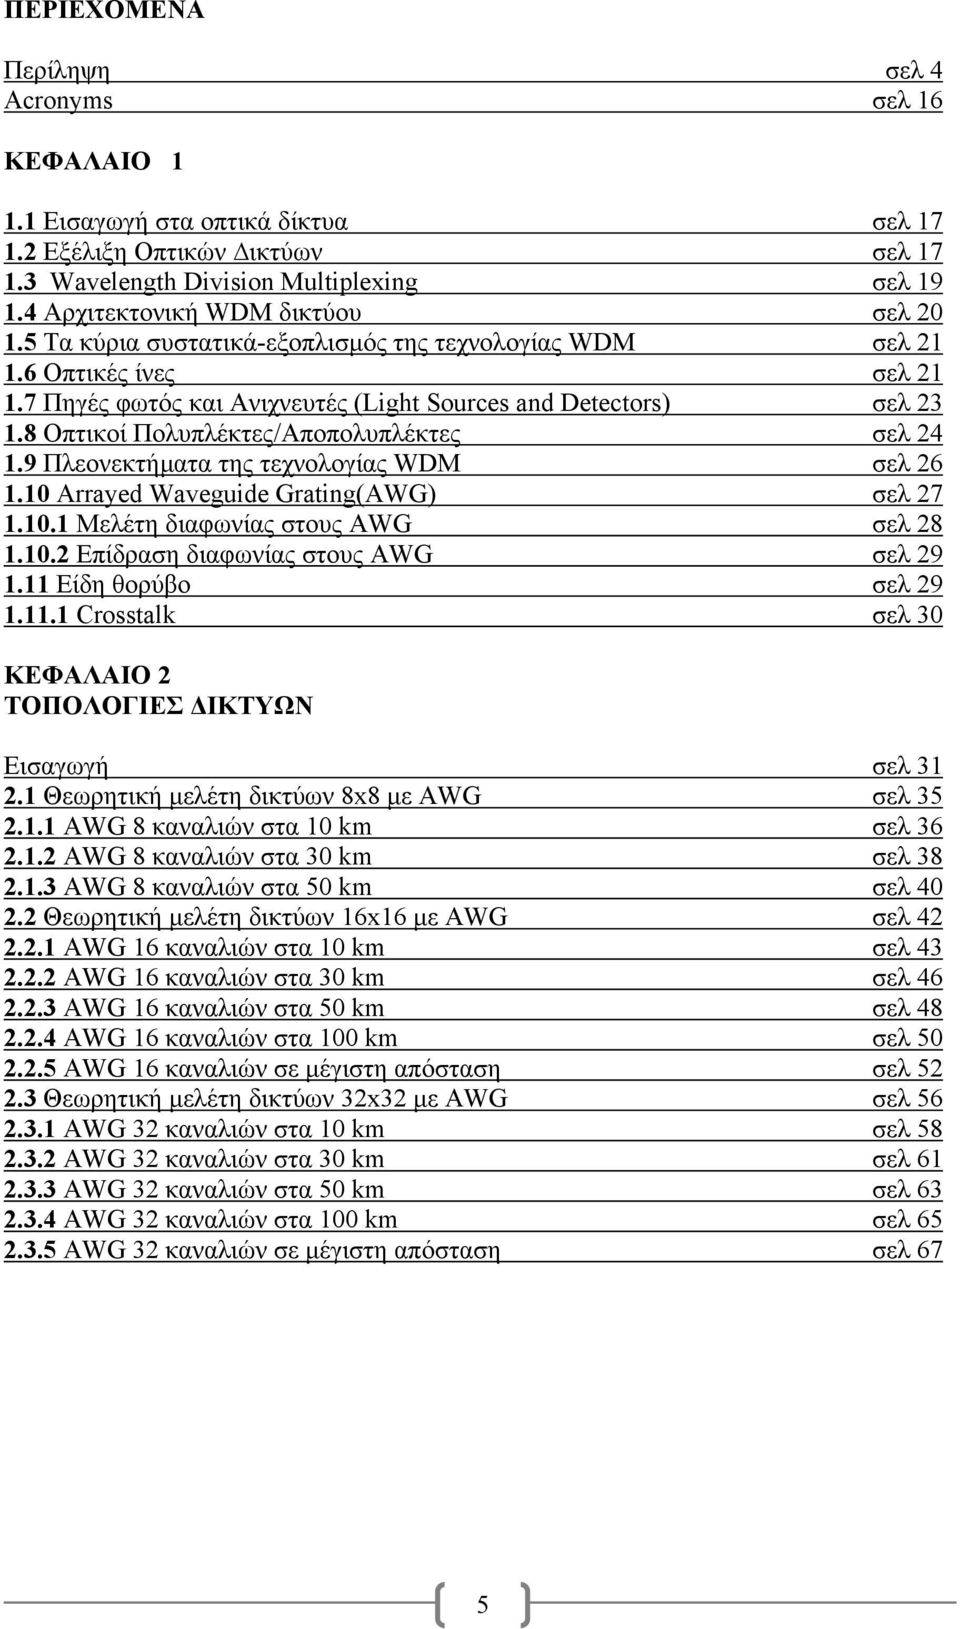 8 Οπτικοί Πολυπλέκτες/Αποπολυπλέκτες σελ 24 1.9 Πλεονεκτήµατα της τεχνολογίας WDM σελ 26 1.10 Arrayed Waveguide Grating(AWG) σελ 27 1.10.1 Μελέτη διαφωνίας στους AWG σελ 28 1.10.2 Επίδραση διαφωνίας στους AWG σελ 29 1.